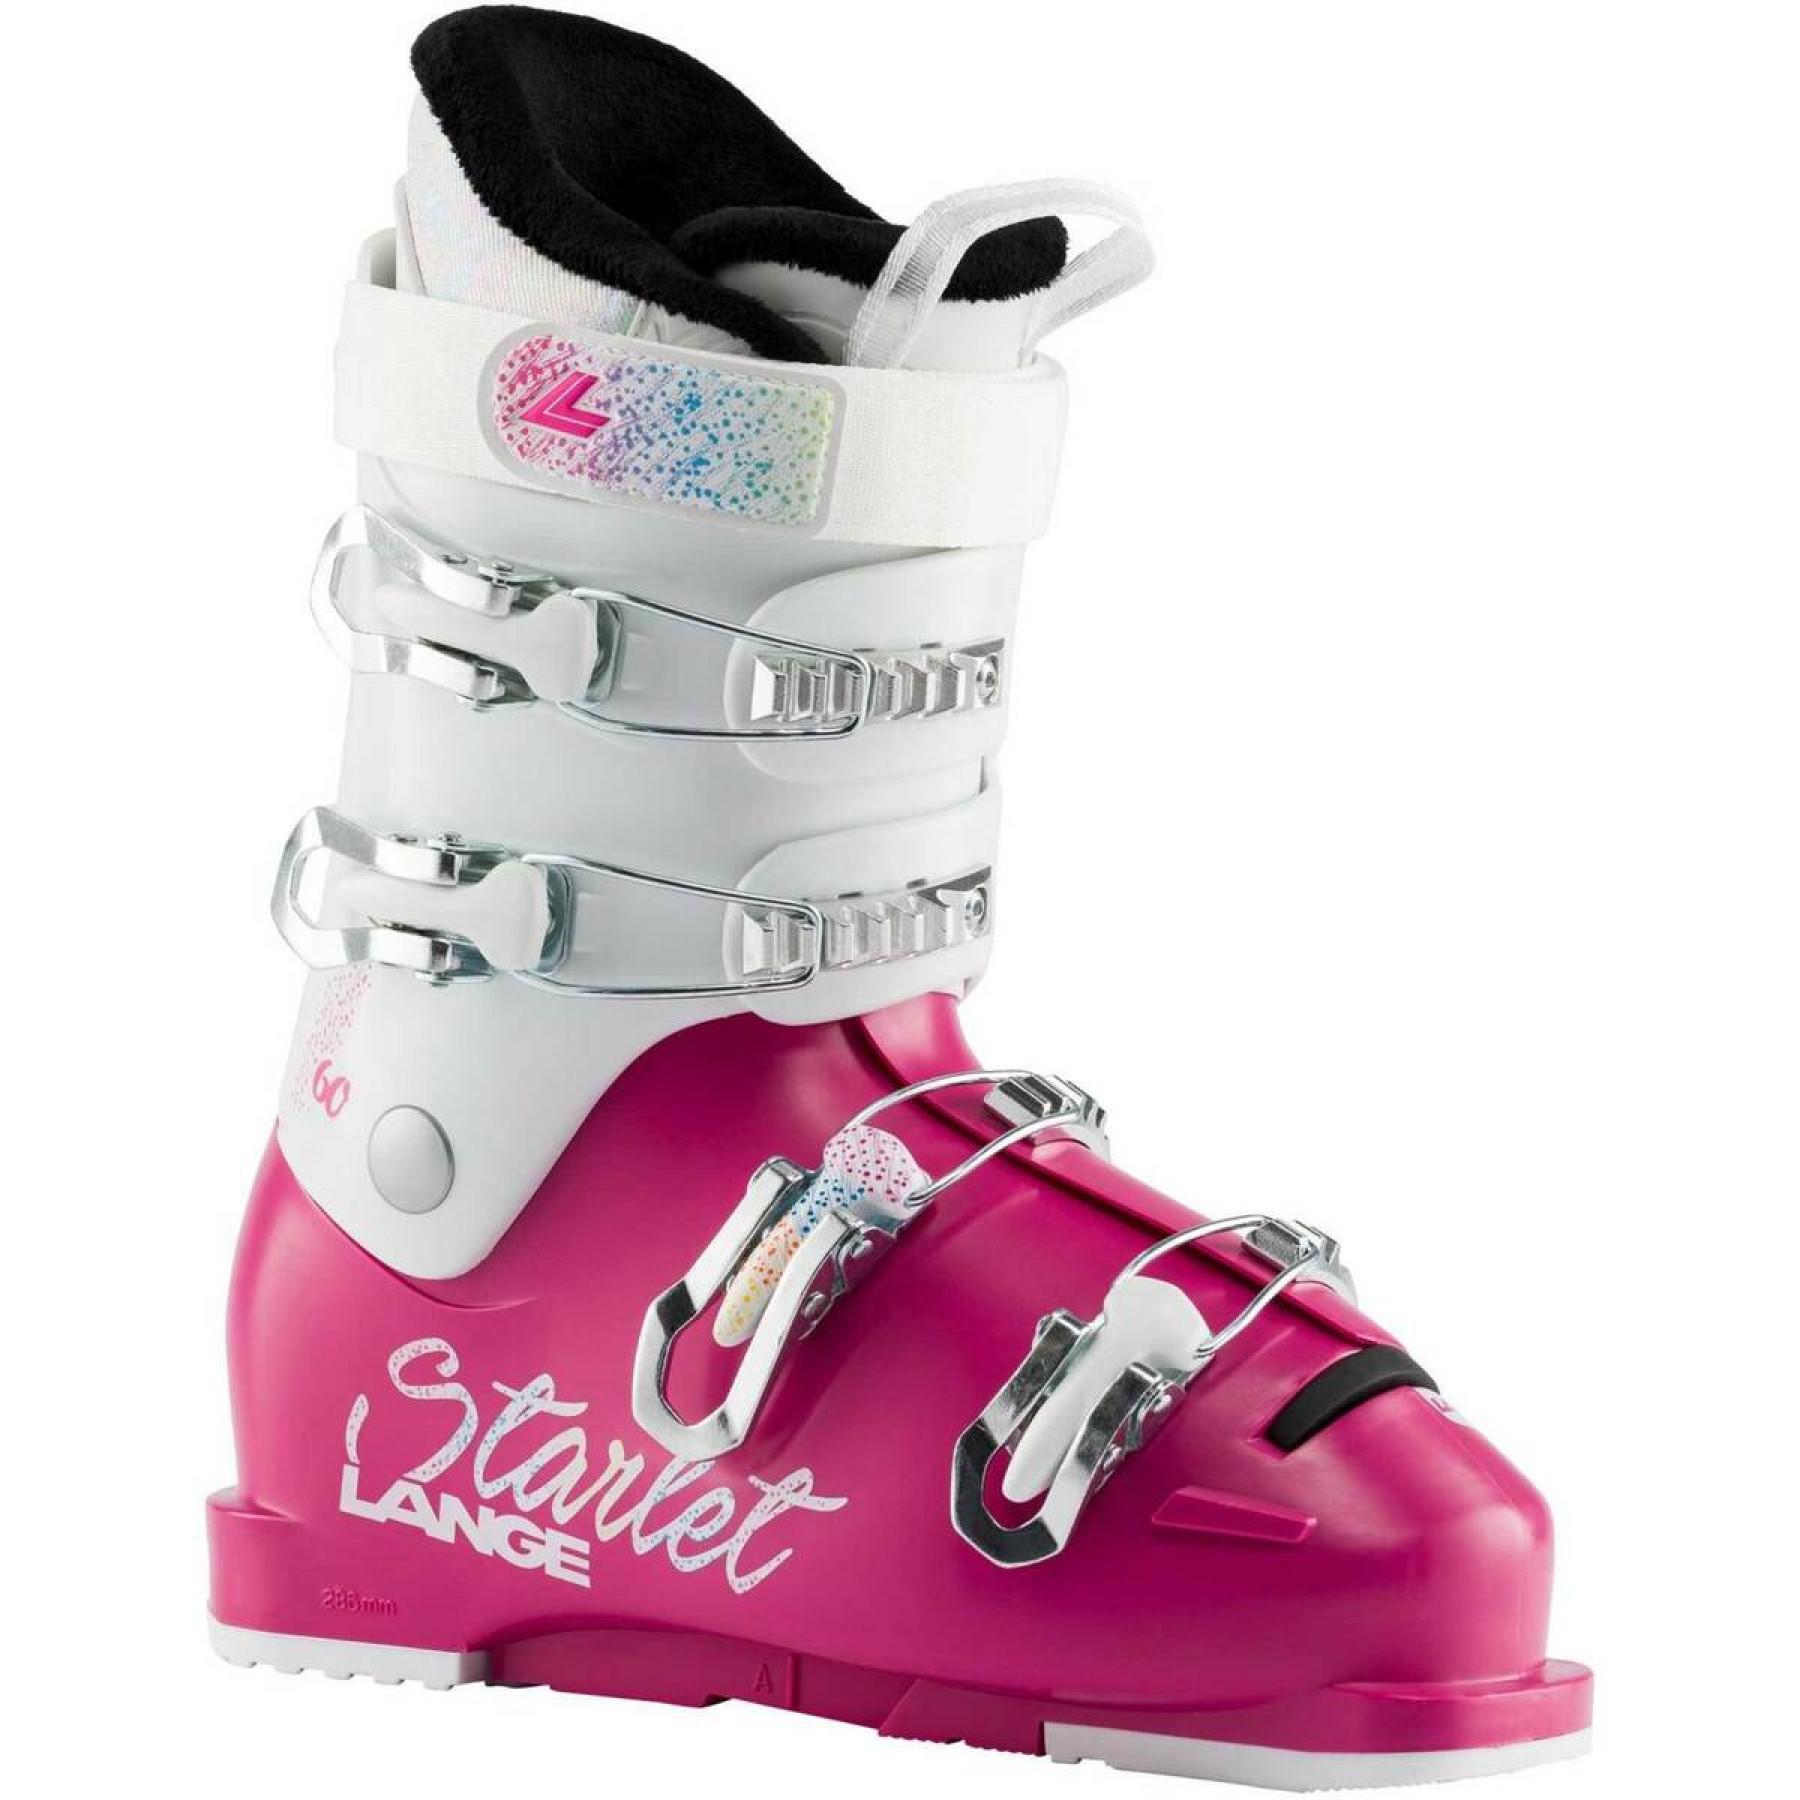 Chaussures de ski enfant Lange starlet 60